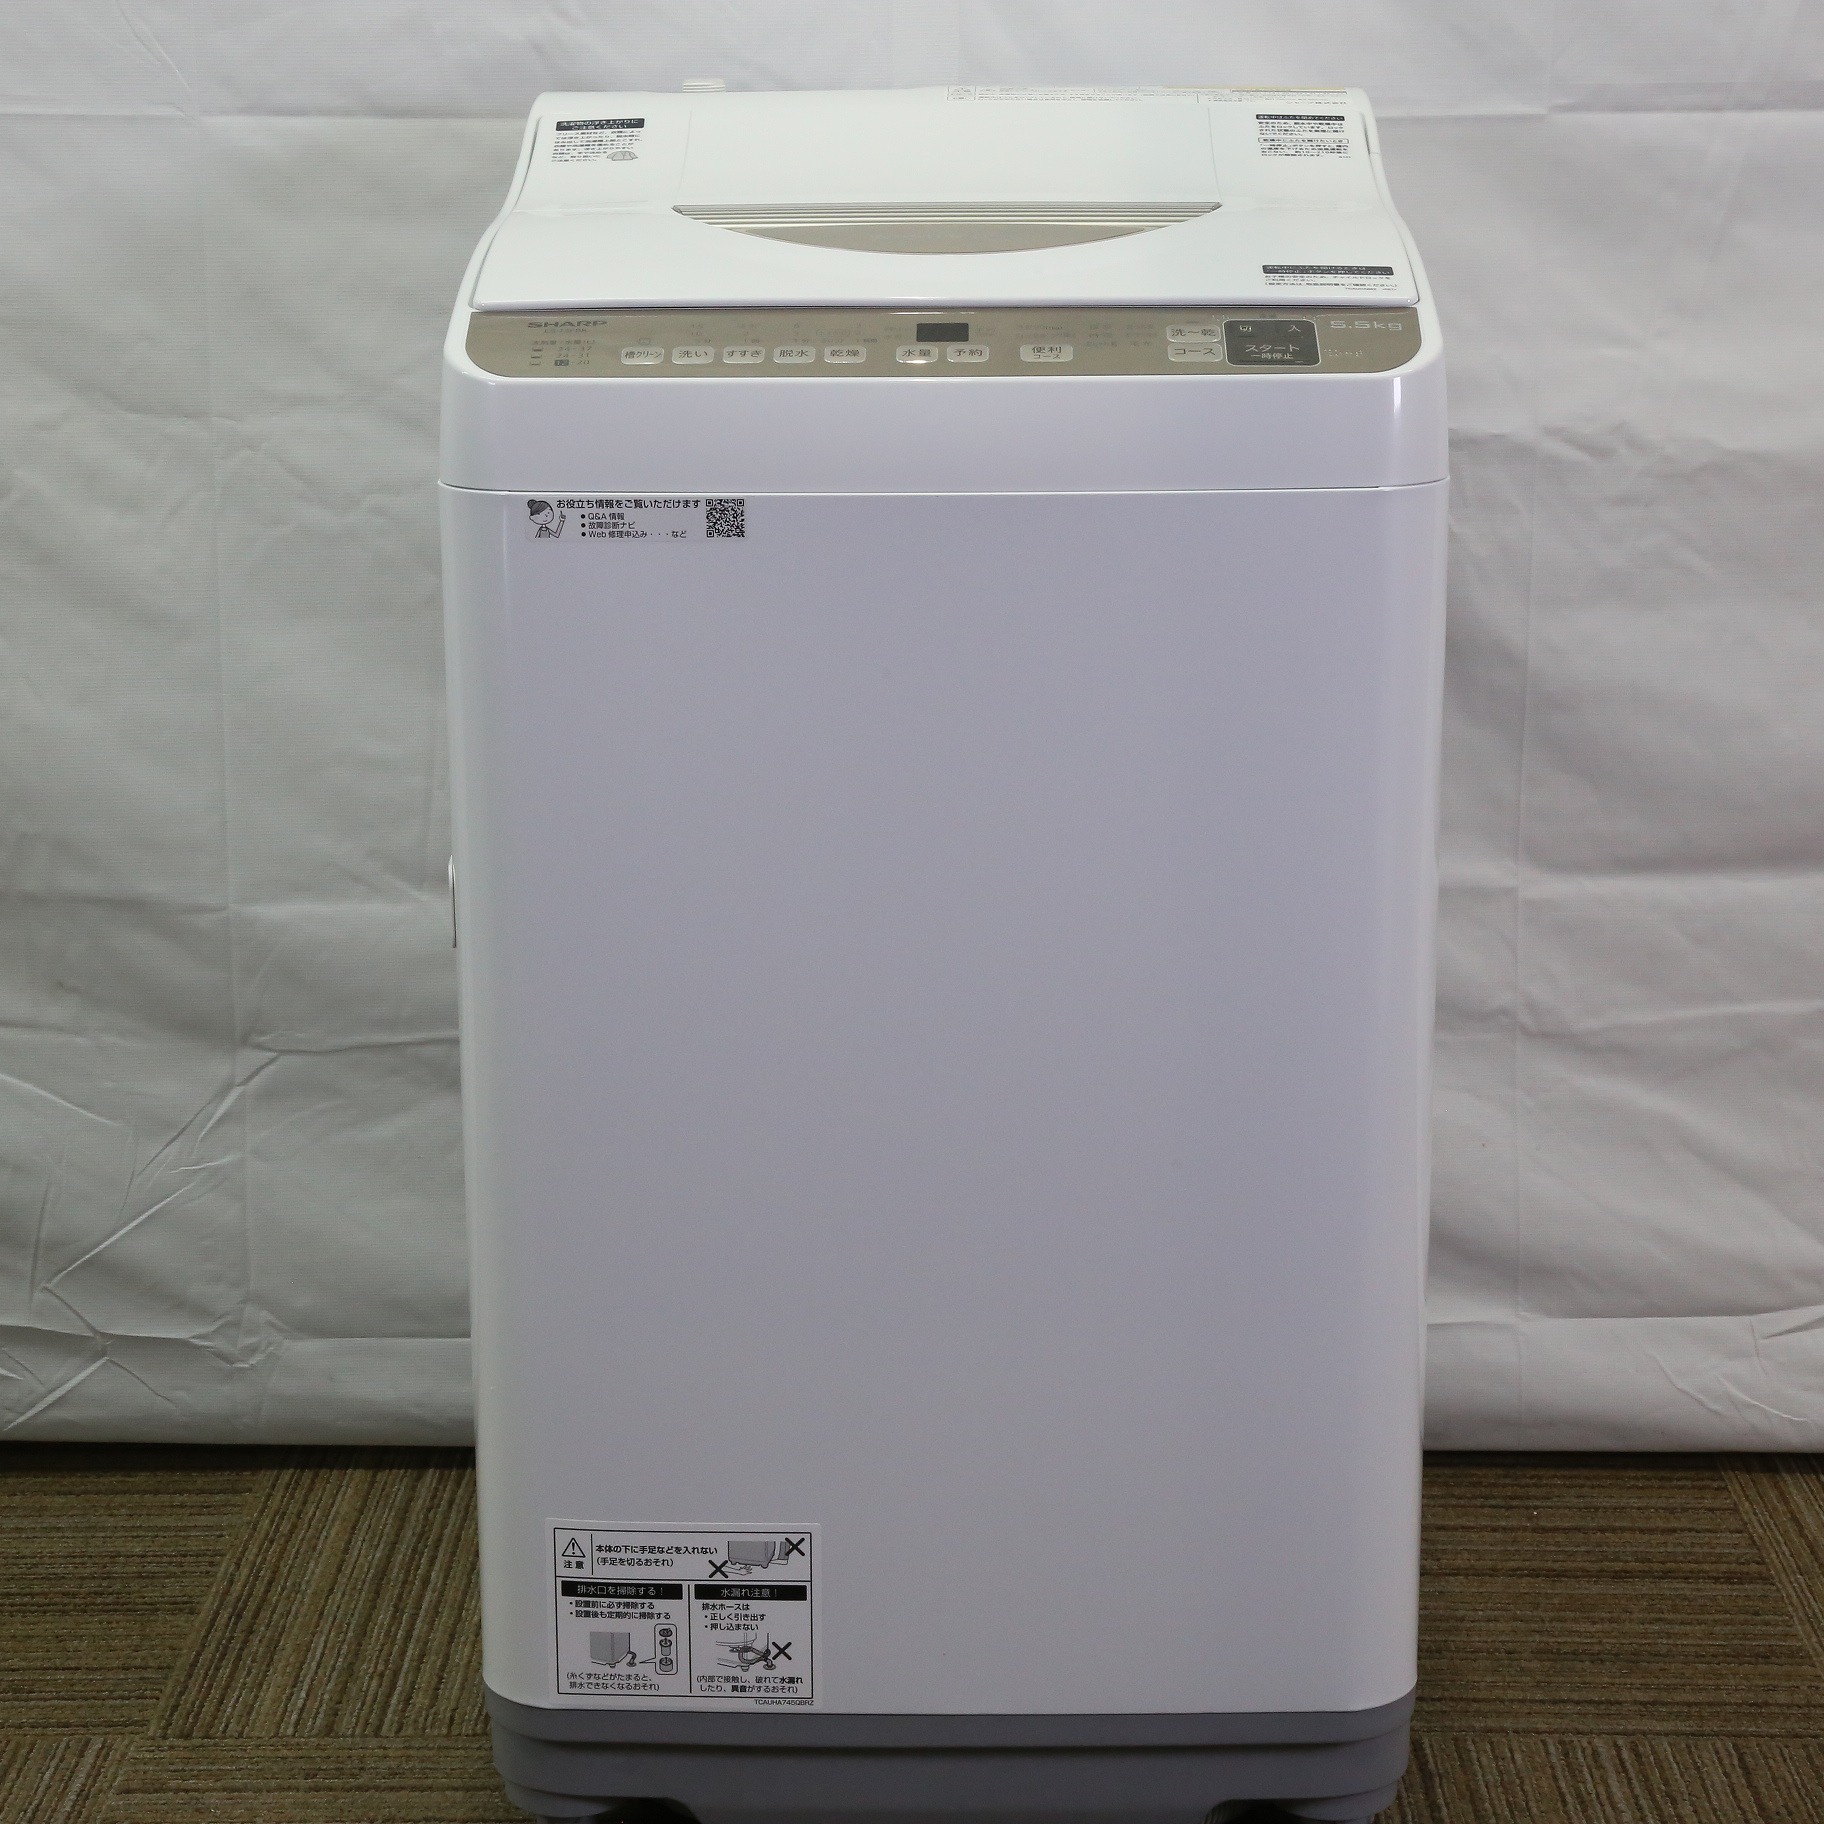 超人気モデル 洗濯機 2017年 シャープ 洗濯乾燥機 5.5kg洗い ES-TX5A-P